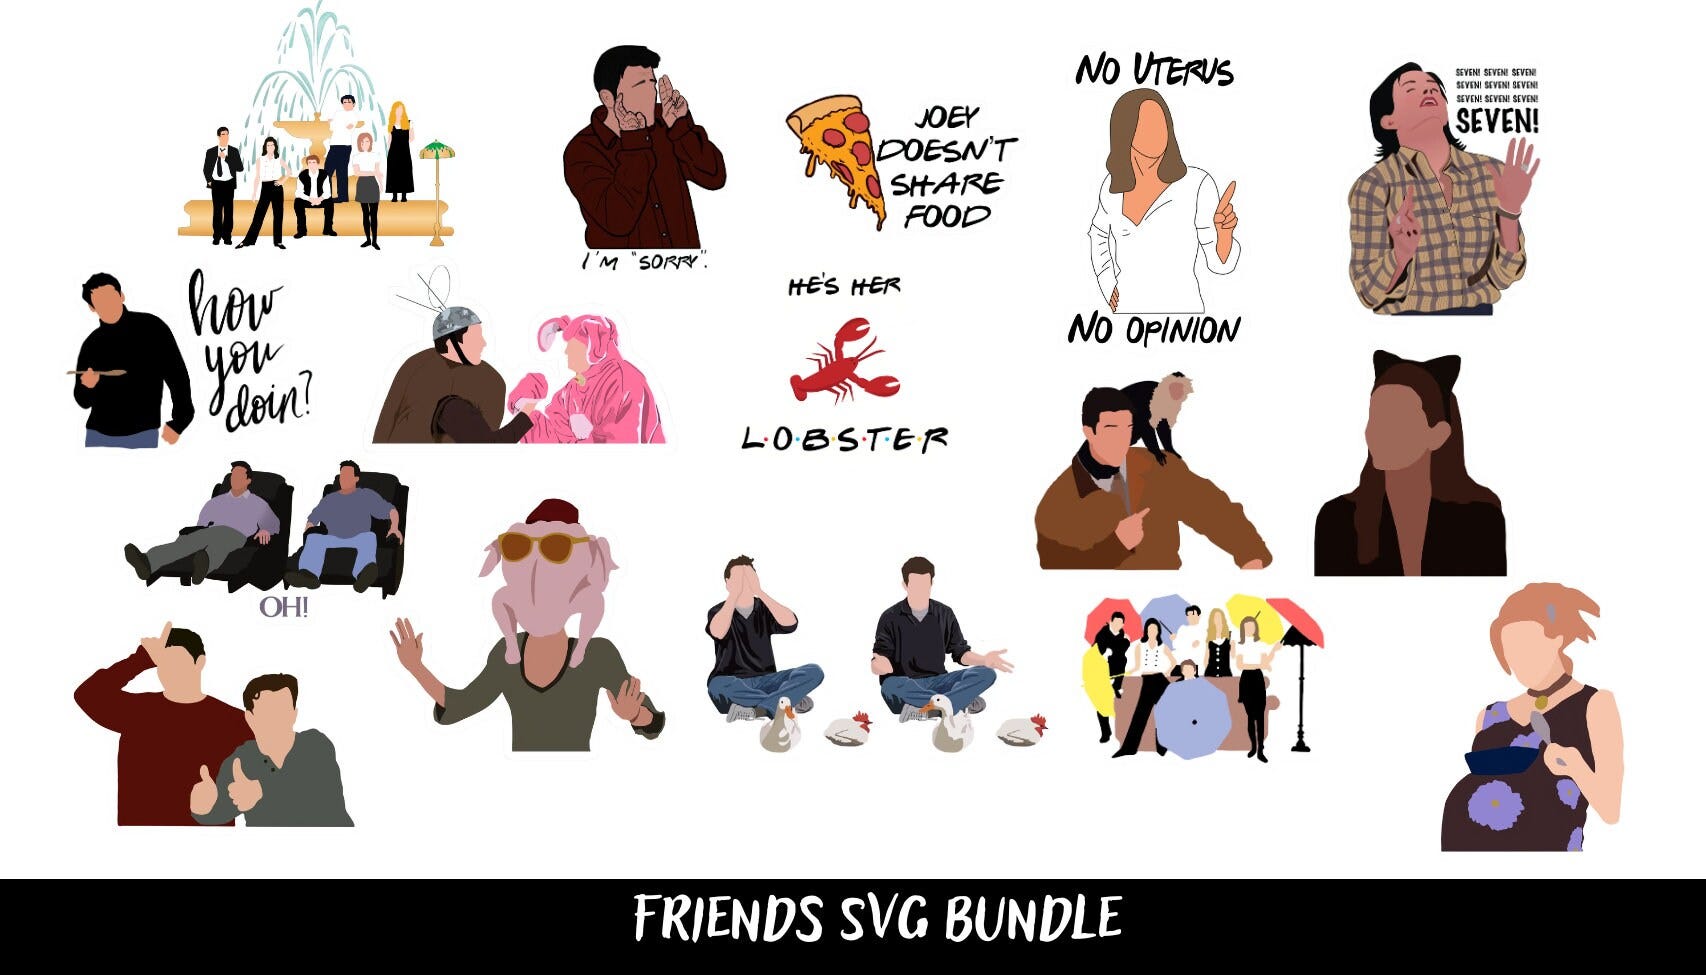 Chandler Bing SVG Bundle, Friends JPG, Chandler Bing Shirt, Ross Geller Tee, Joey Doesn